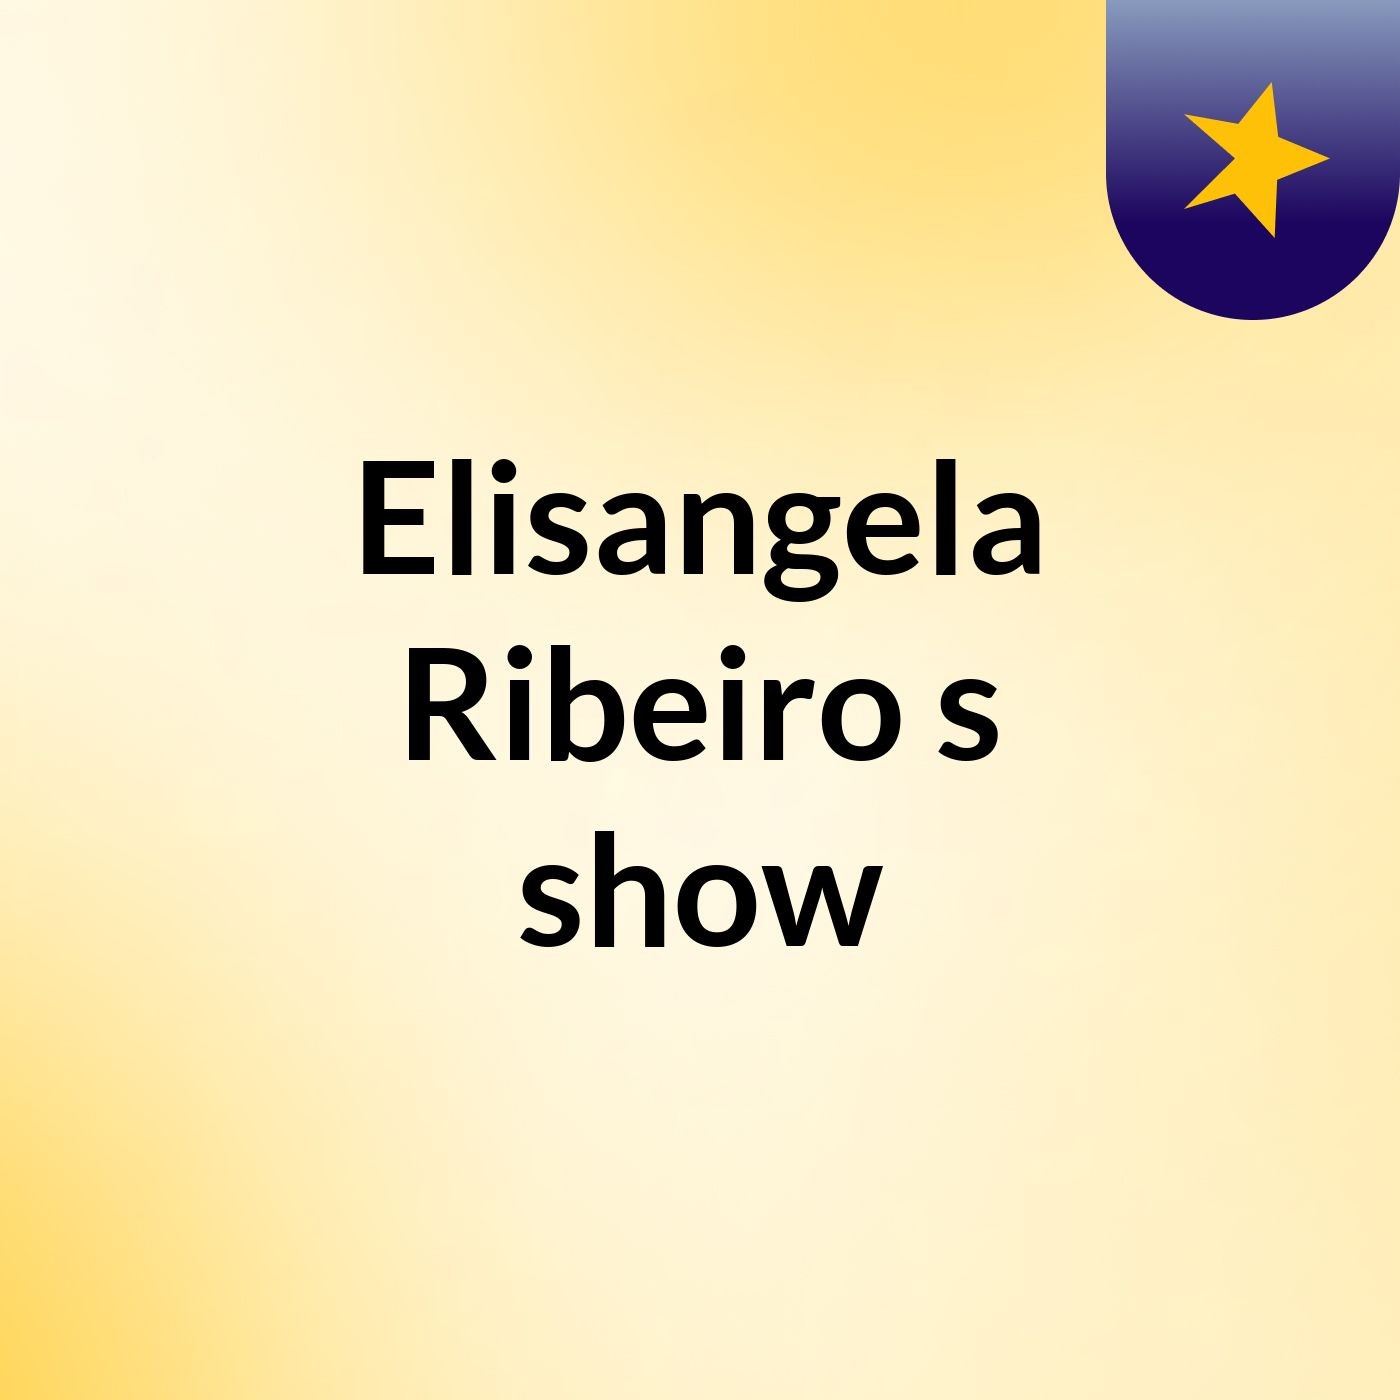 Elisangela Ribeiro's show